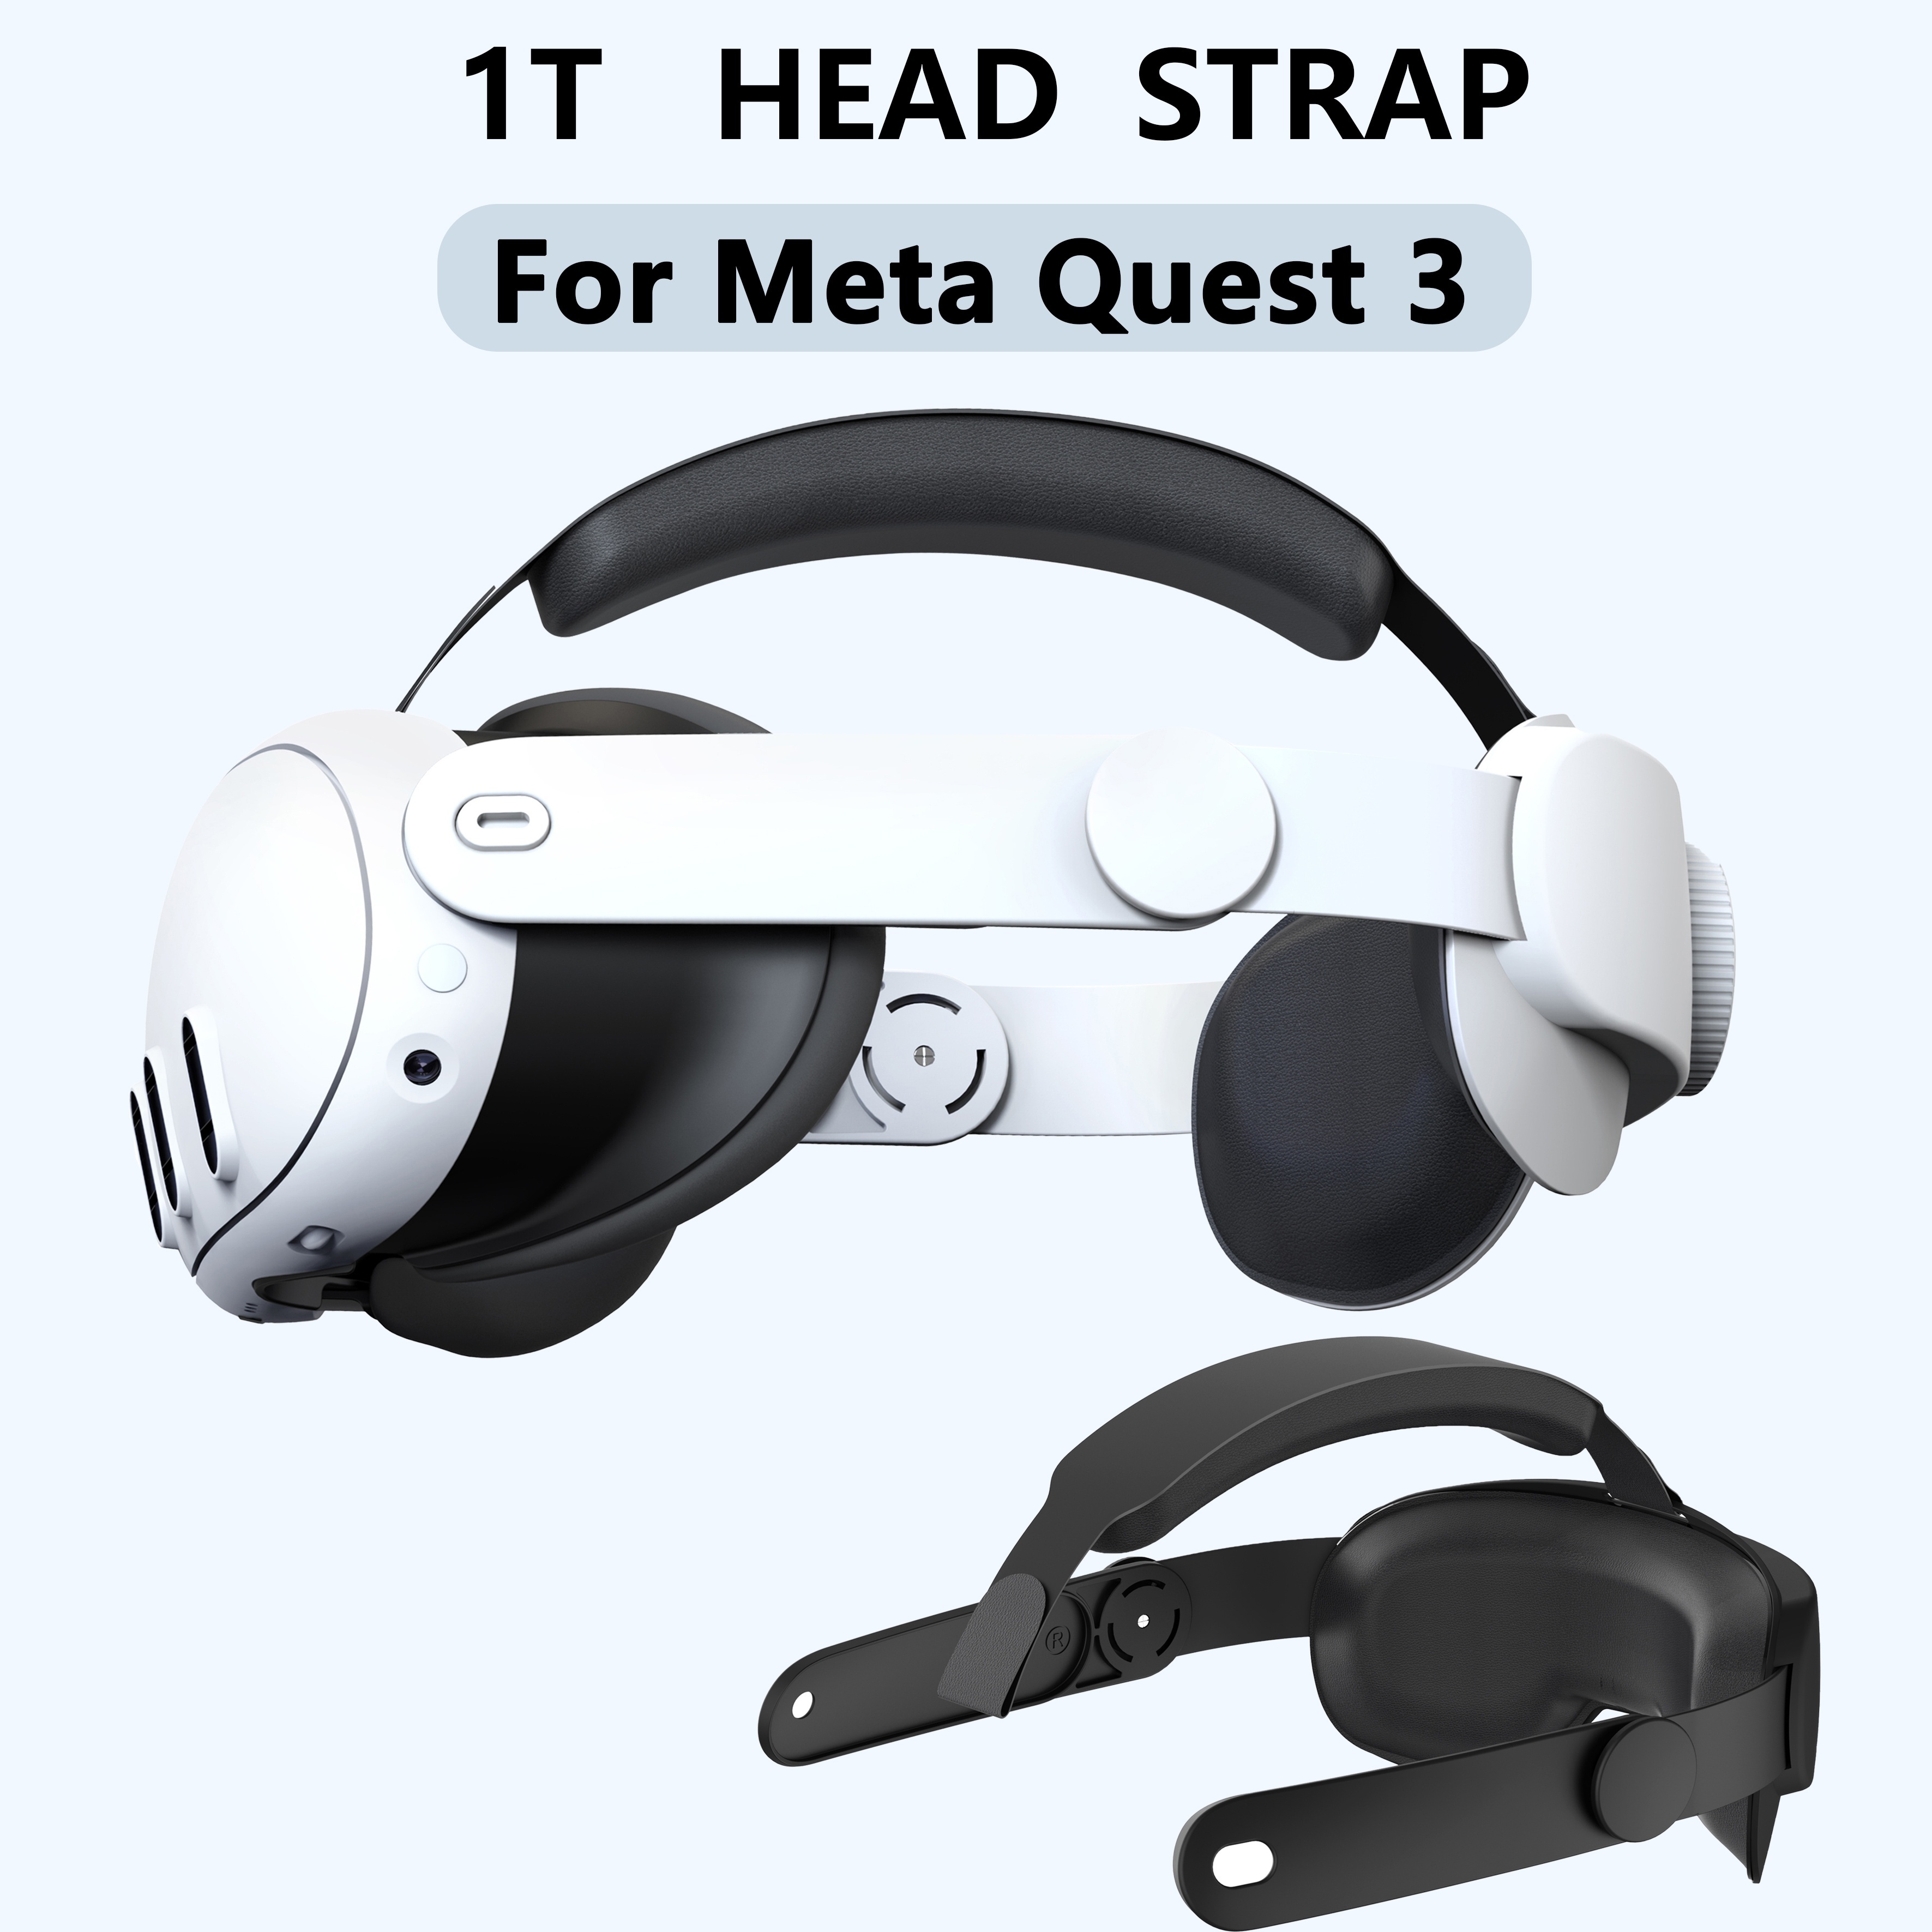 Quest 3 Head Straps Comparison Review 